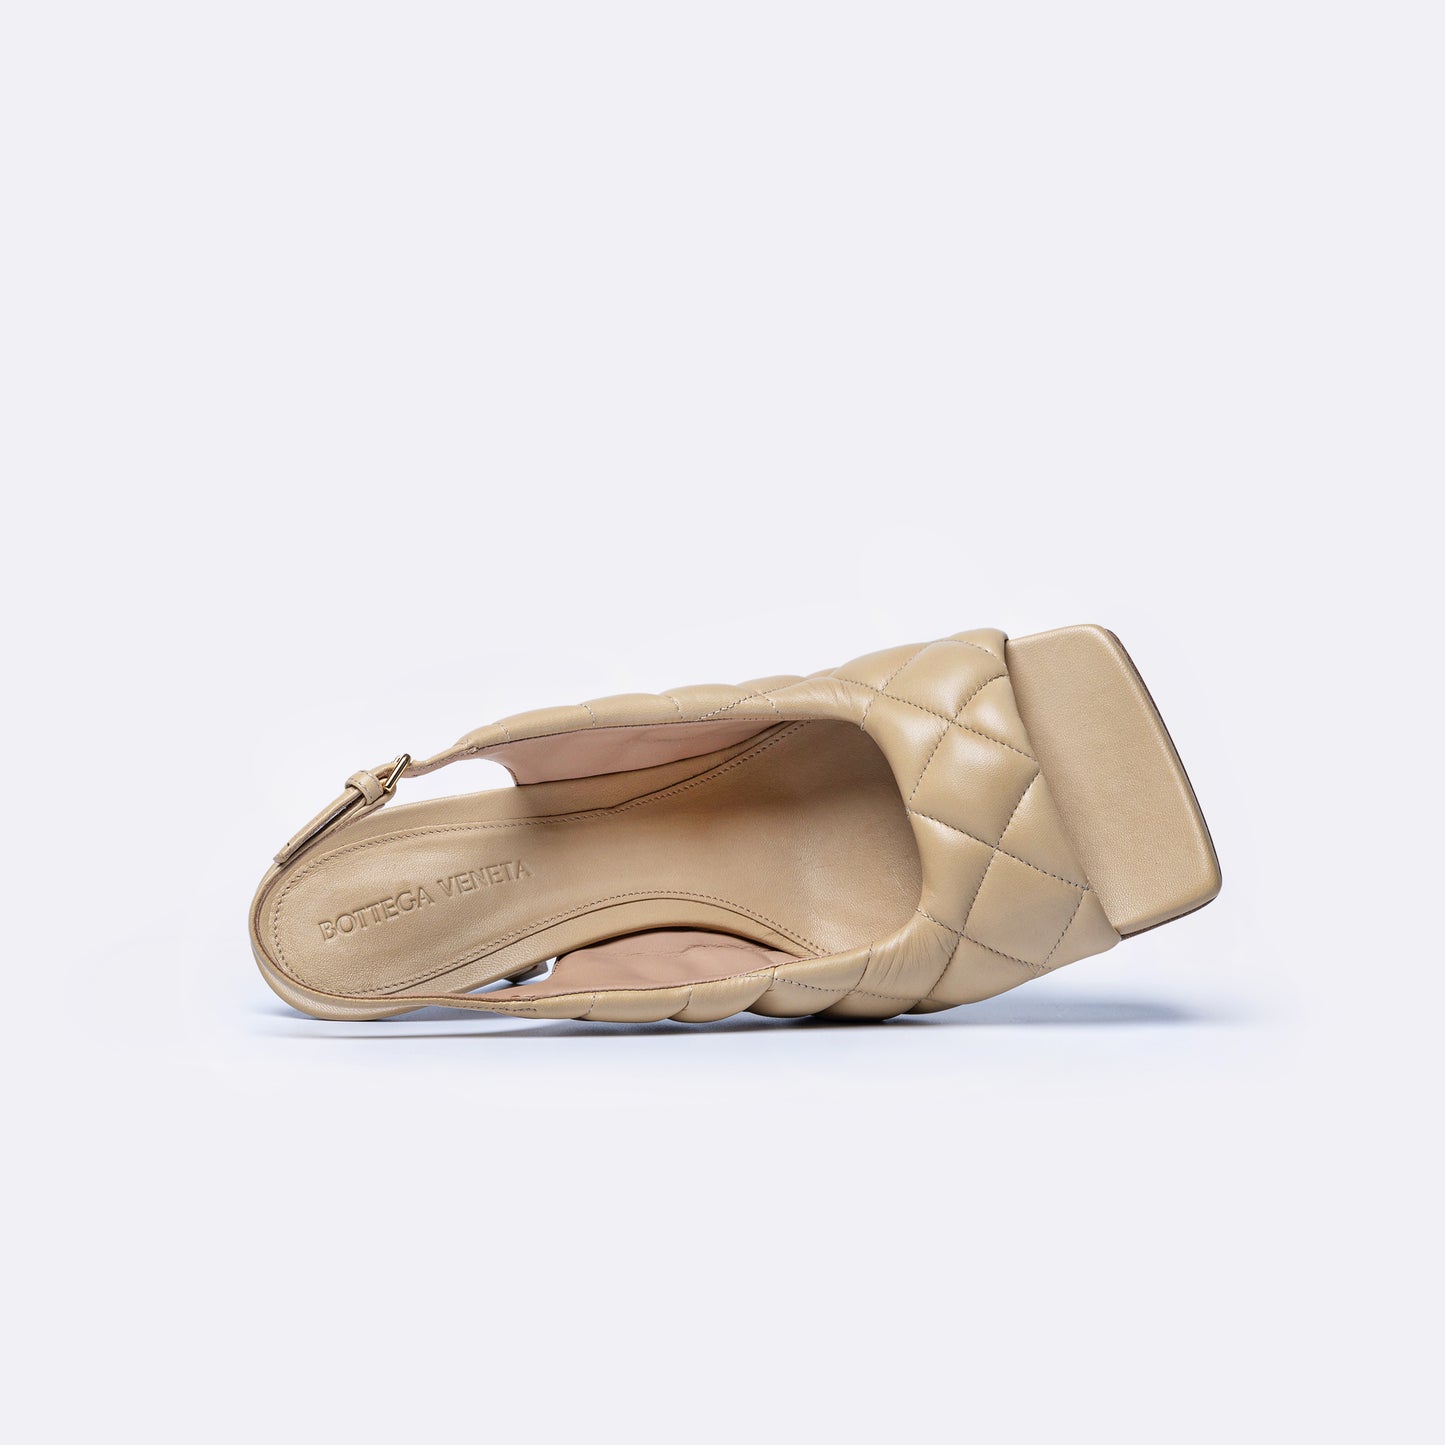 Bottega Venetta Sandals